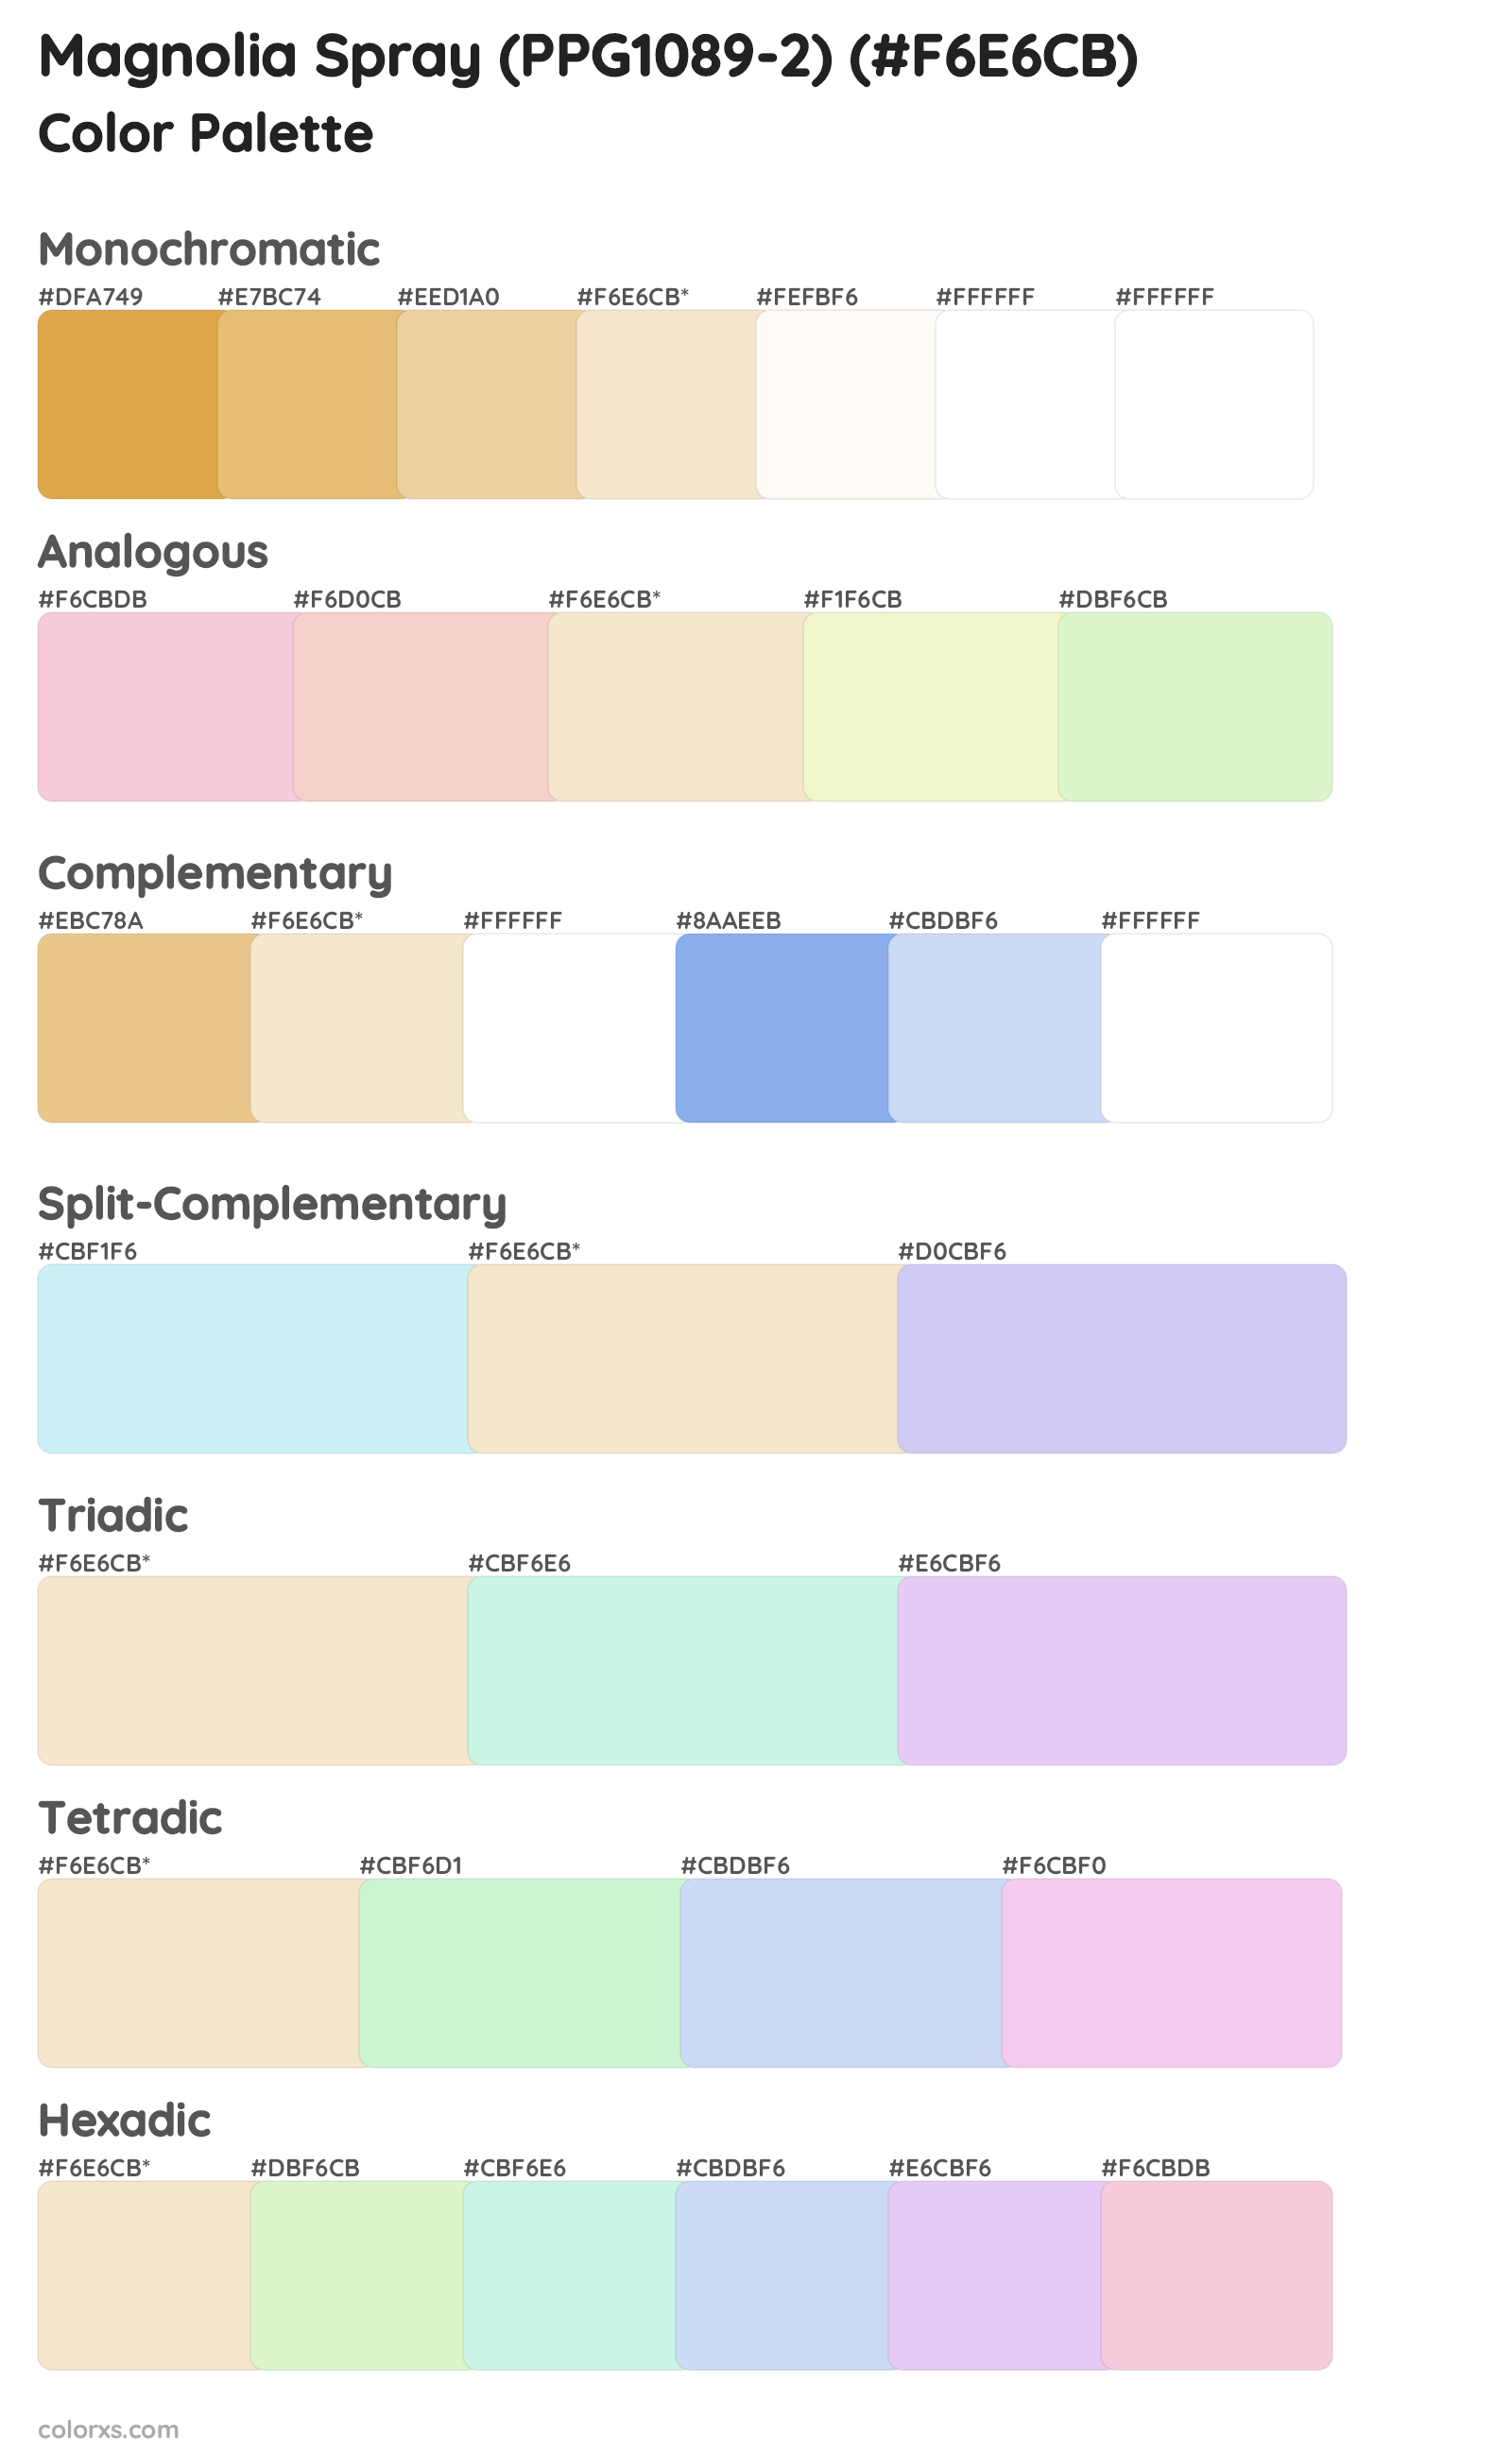 Magnolia Spray (PPG1089-2) Color Scheme Palettes